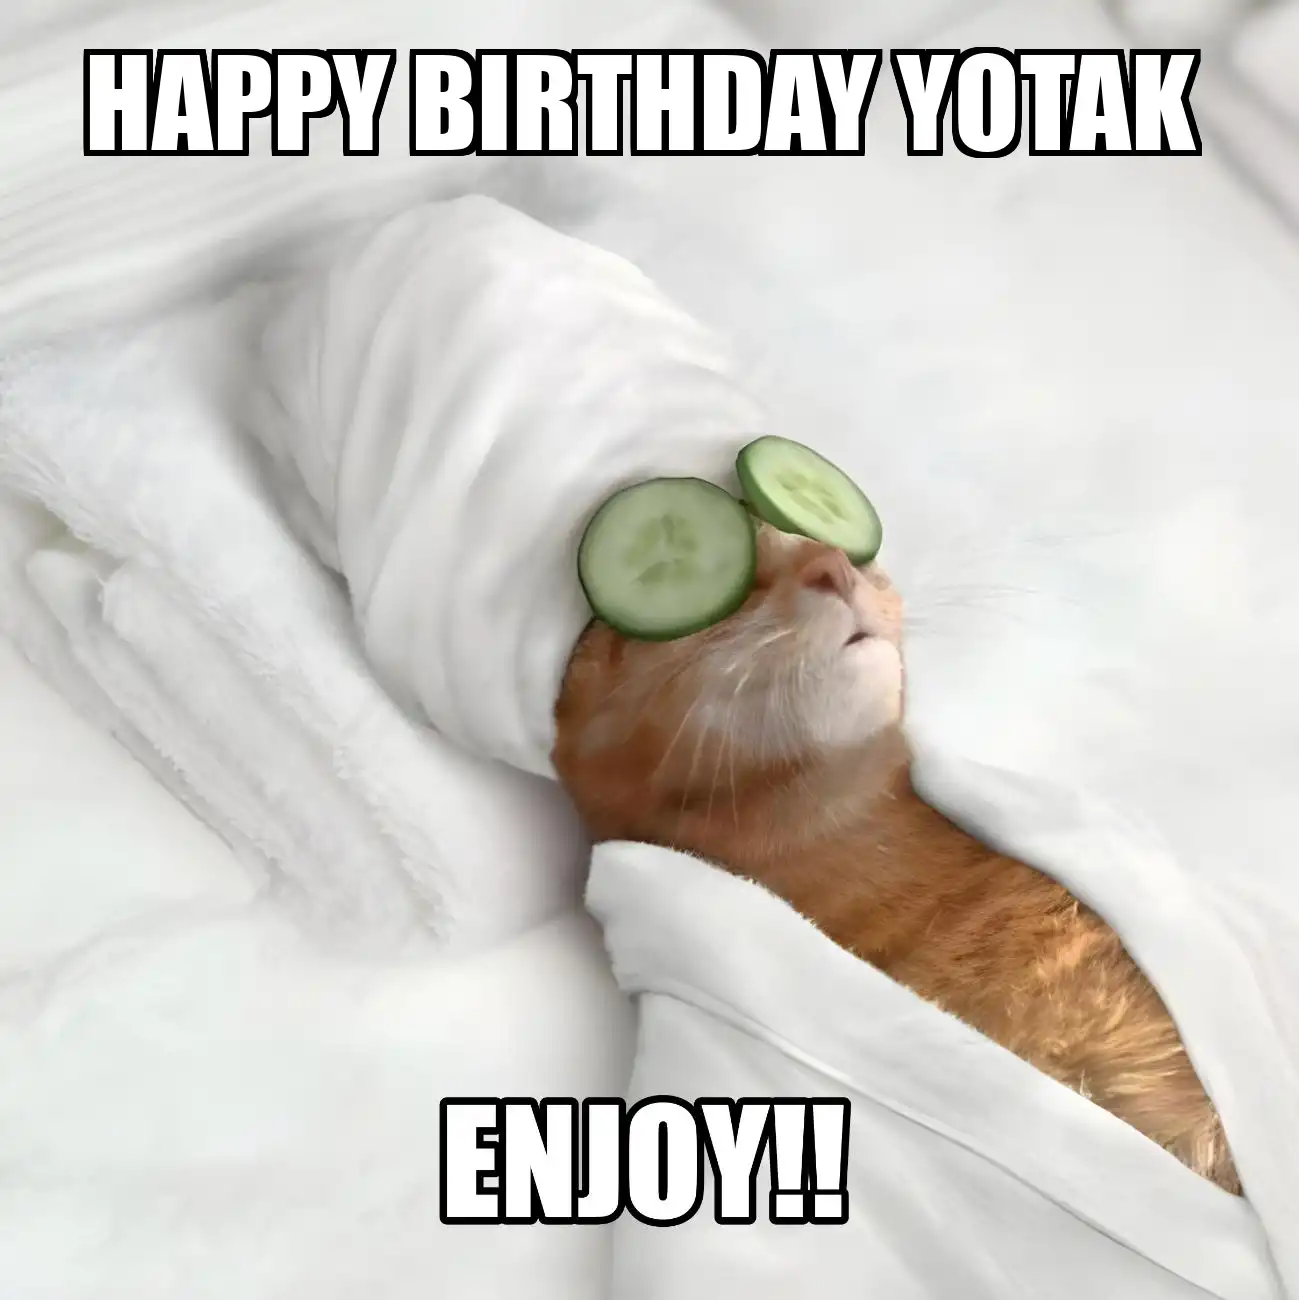 Happy Birthday Yotak Enjoy Cat Meme